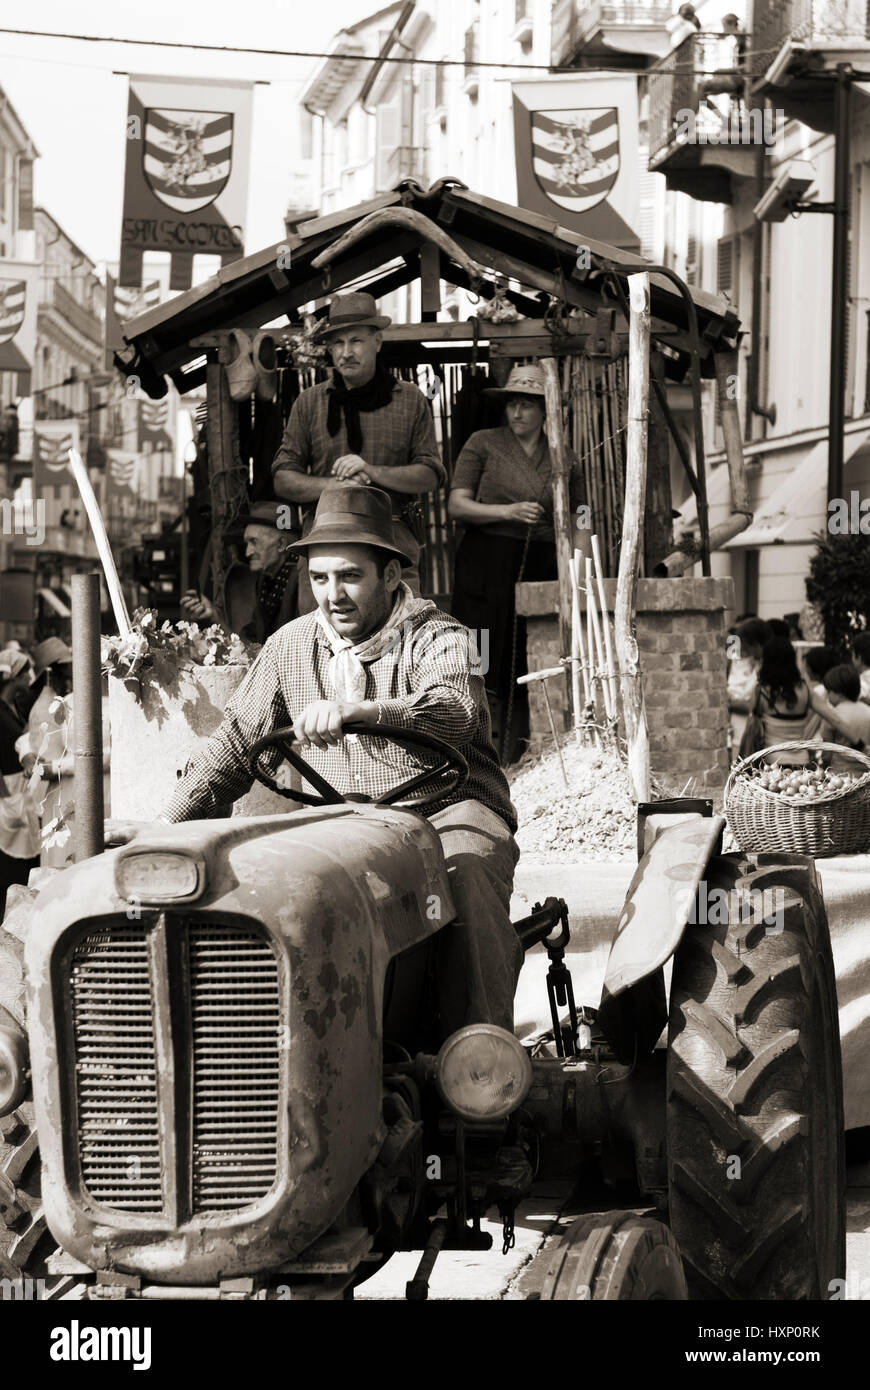 Maman de conduire le tracteur, scène rurale Banque D'Images